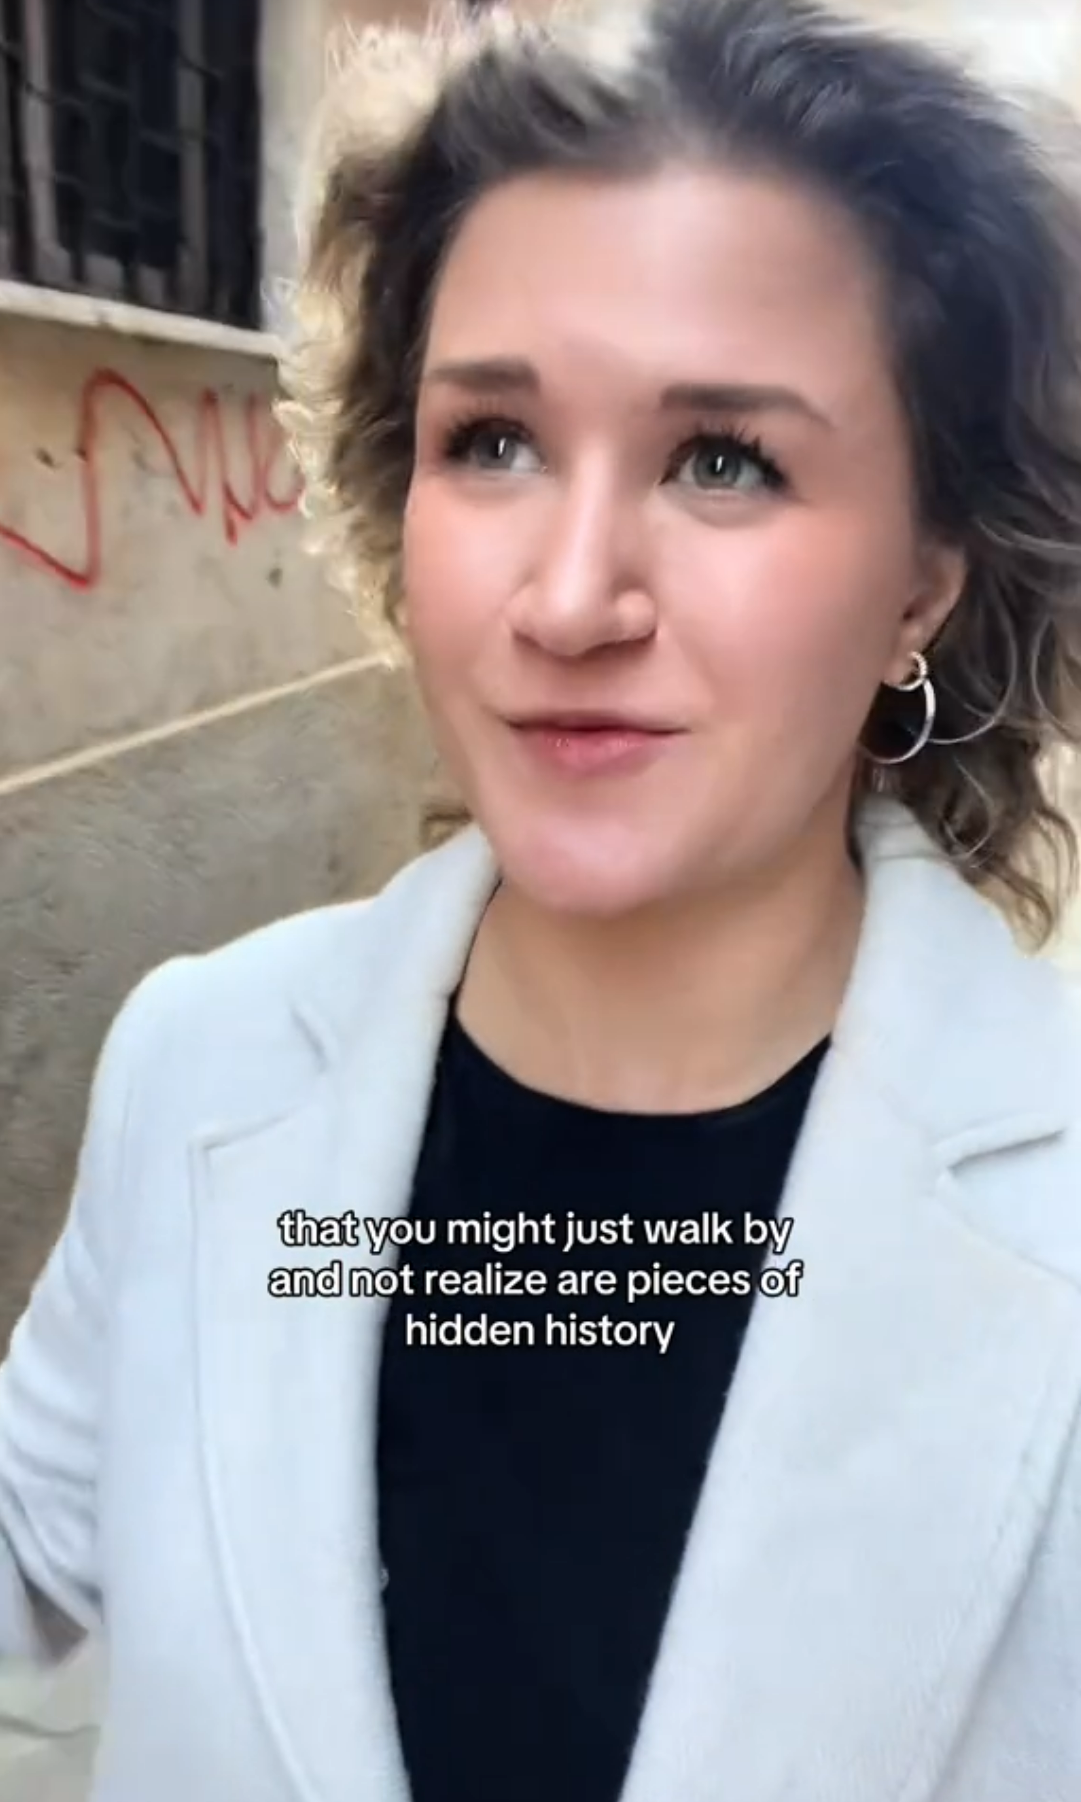 Die TikTok-Nutzerin und Reise-Influencerin Kacie Rose hat kürzlich ein Video über einige verborgene Stücke der Geschichte in Venedig gepostet